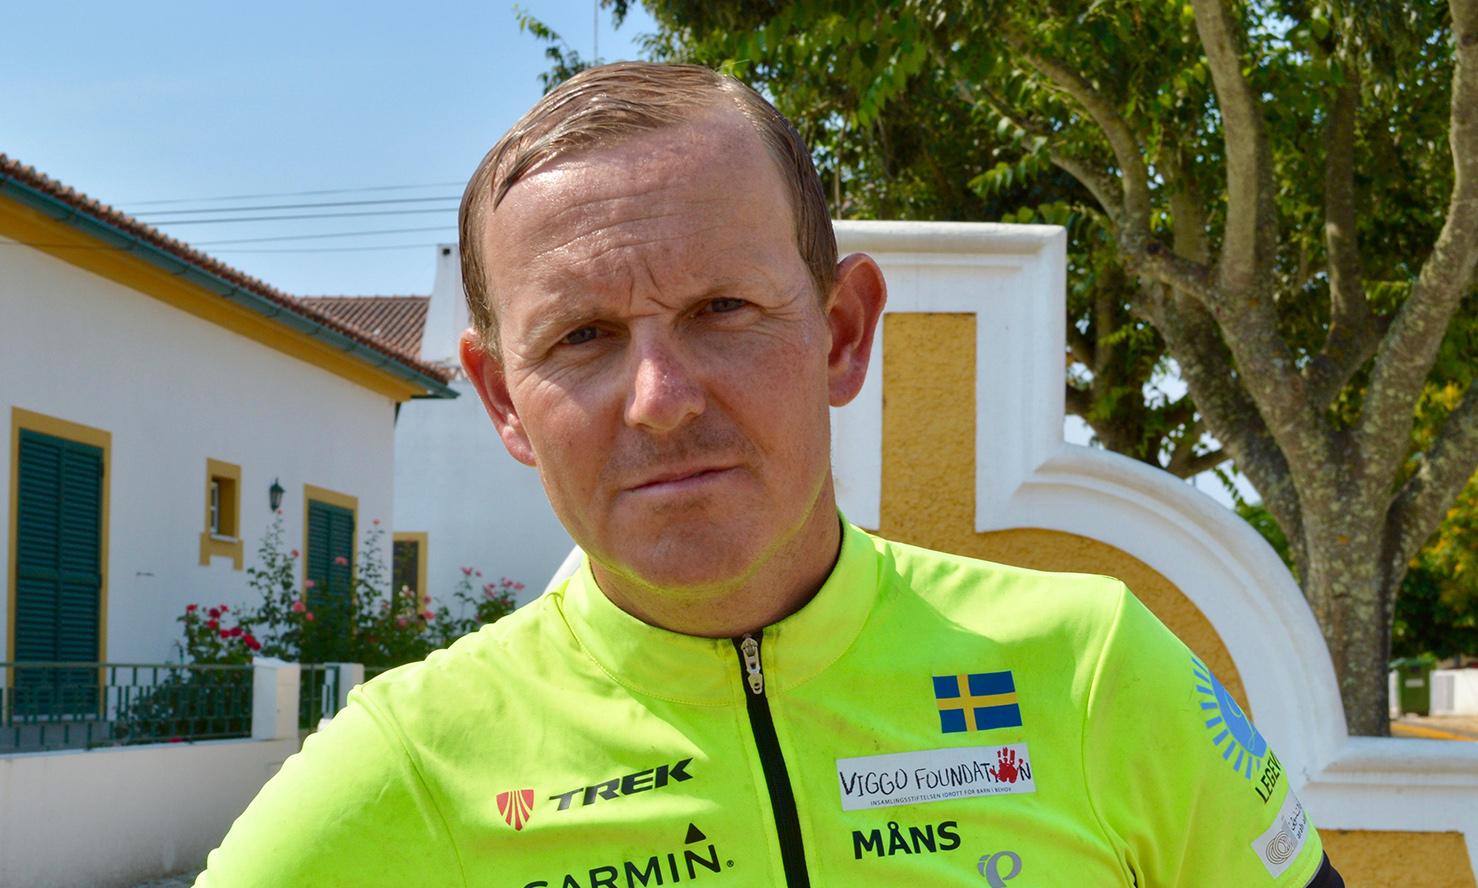 Komikern Måns Möller, 42, som just nu cyklar genom Europa, befinner sig i närheten av katastrofen